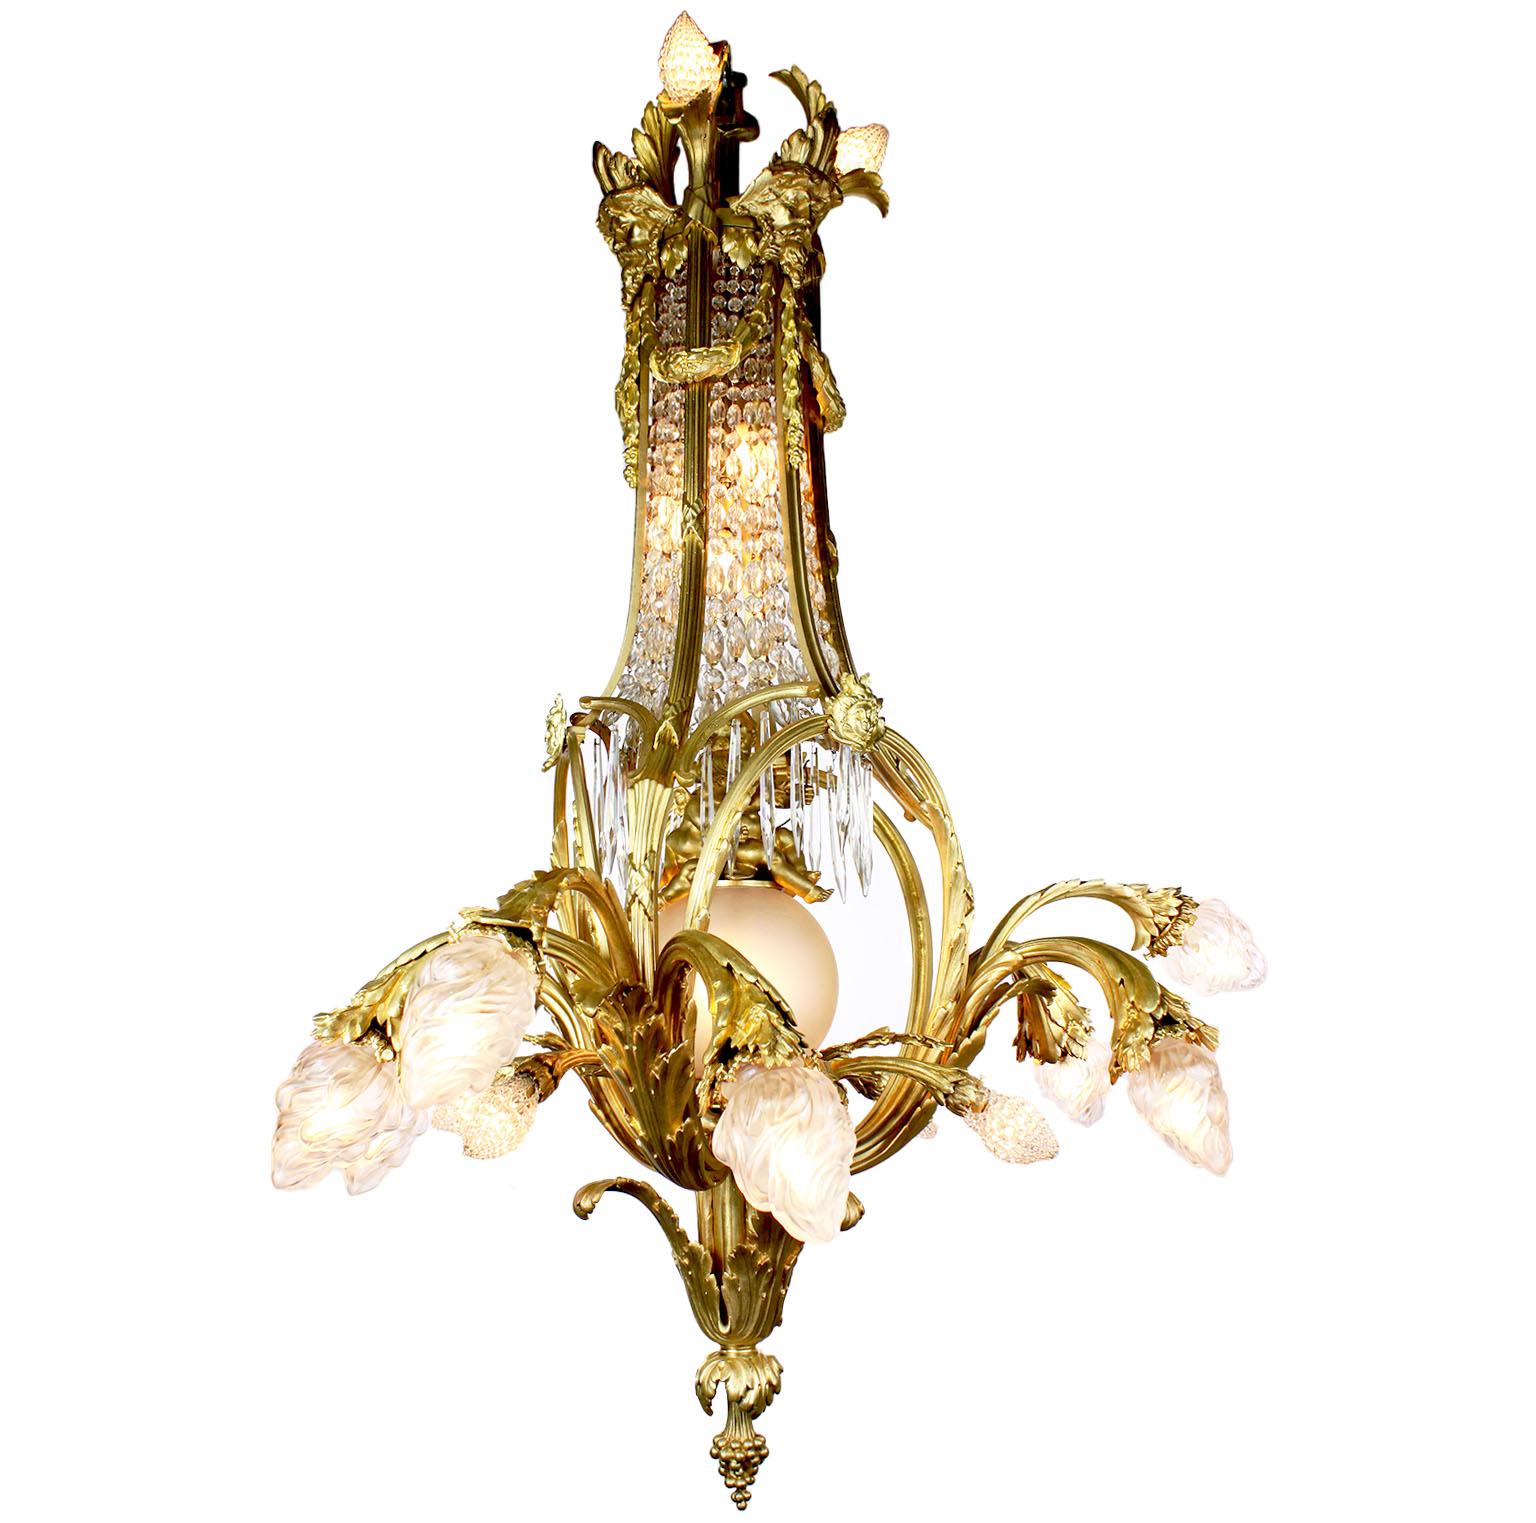 Ein großer und seltener französischer Belle Époque-Kronleuchter aus vergoldeter Bronze und geschliffenem Glas mit vierundzwanzig Lichtern. Der längliche Rahmen aus vergoldeter Bronze mit verschnörkelten Blumenarmen, die aus dem unteren Teil